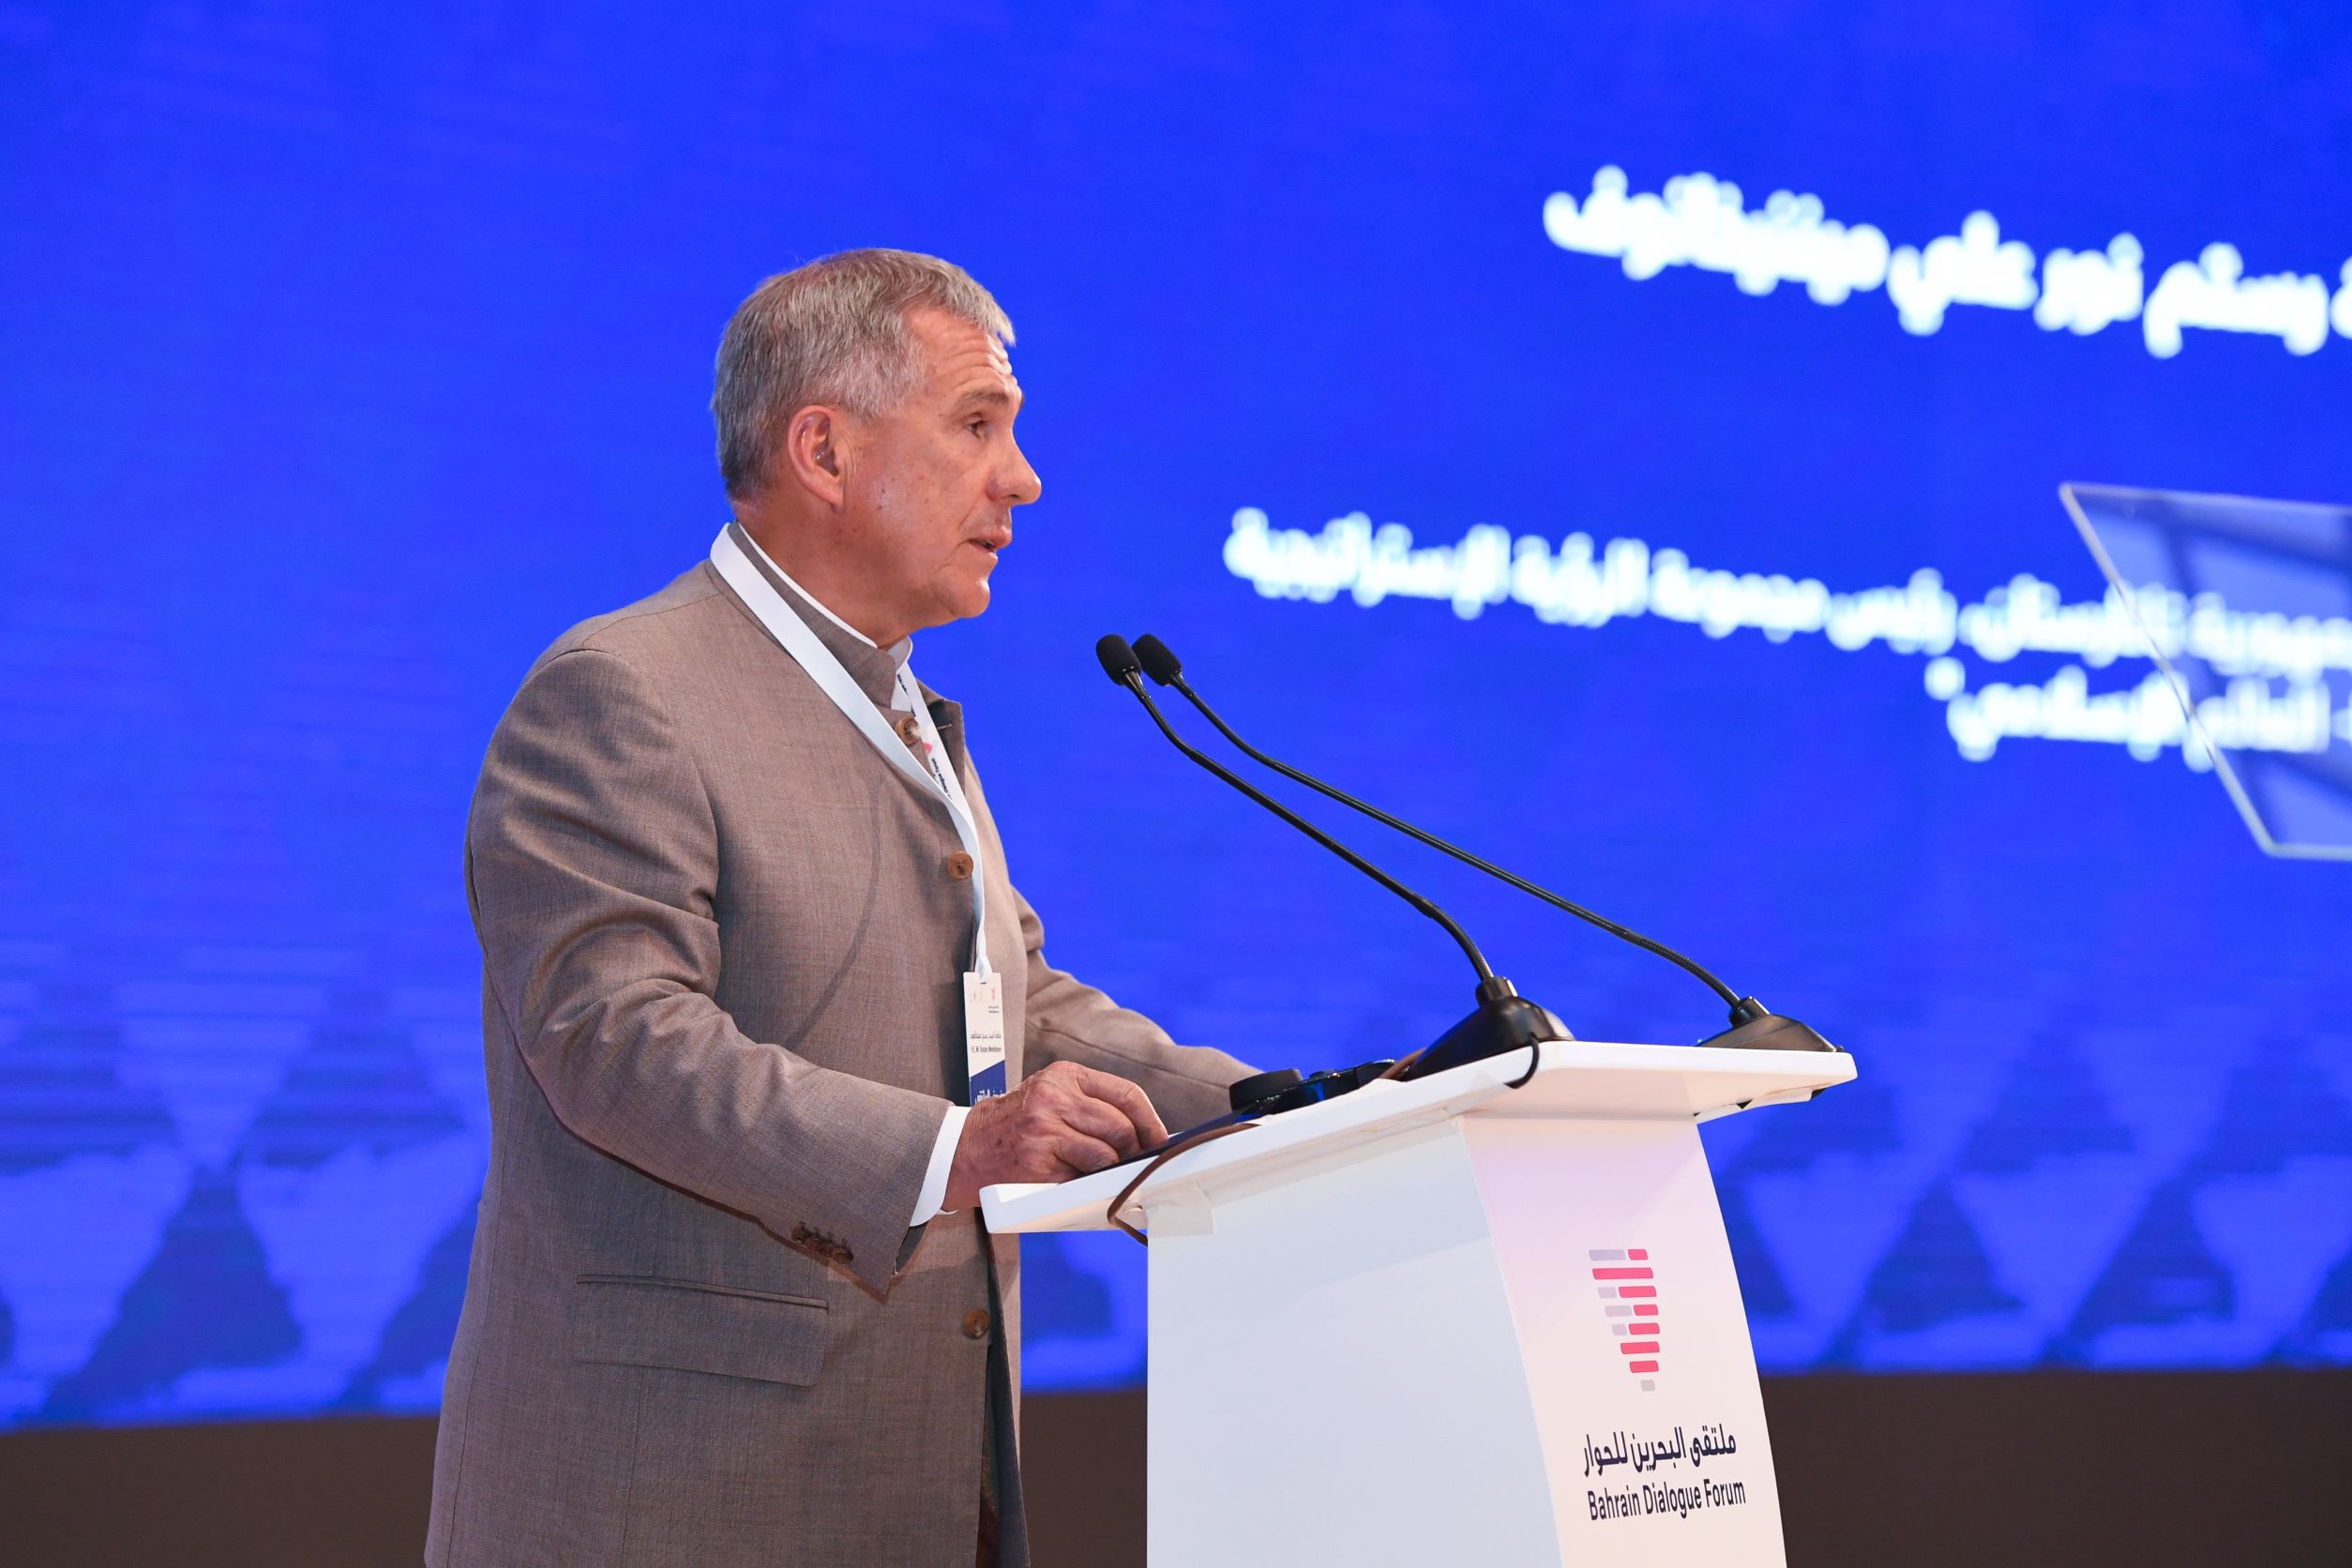 Глава Татарстана Рустам Минниханов представил в Бахрейне гармоничную модель совместного проживания и взаимодействия народов и религий на примере своей республики